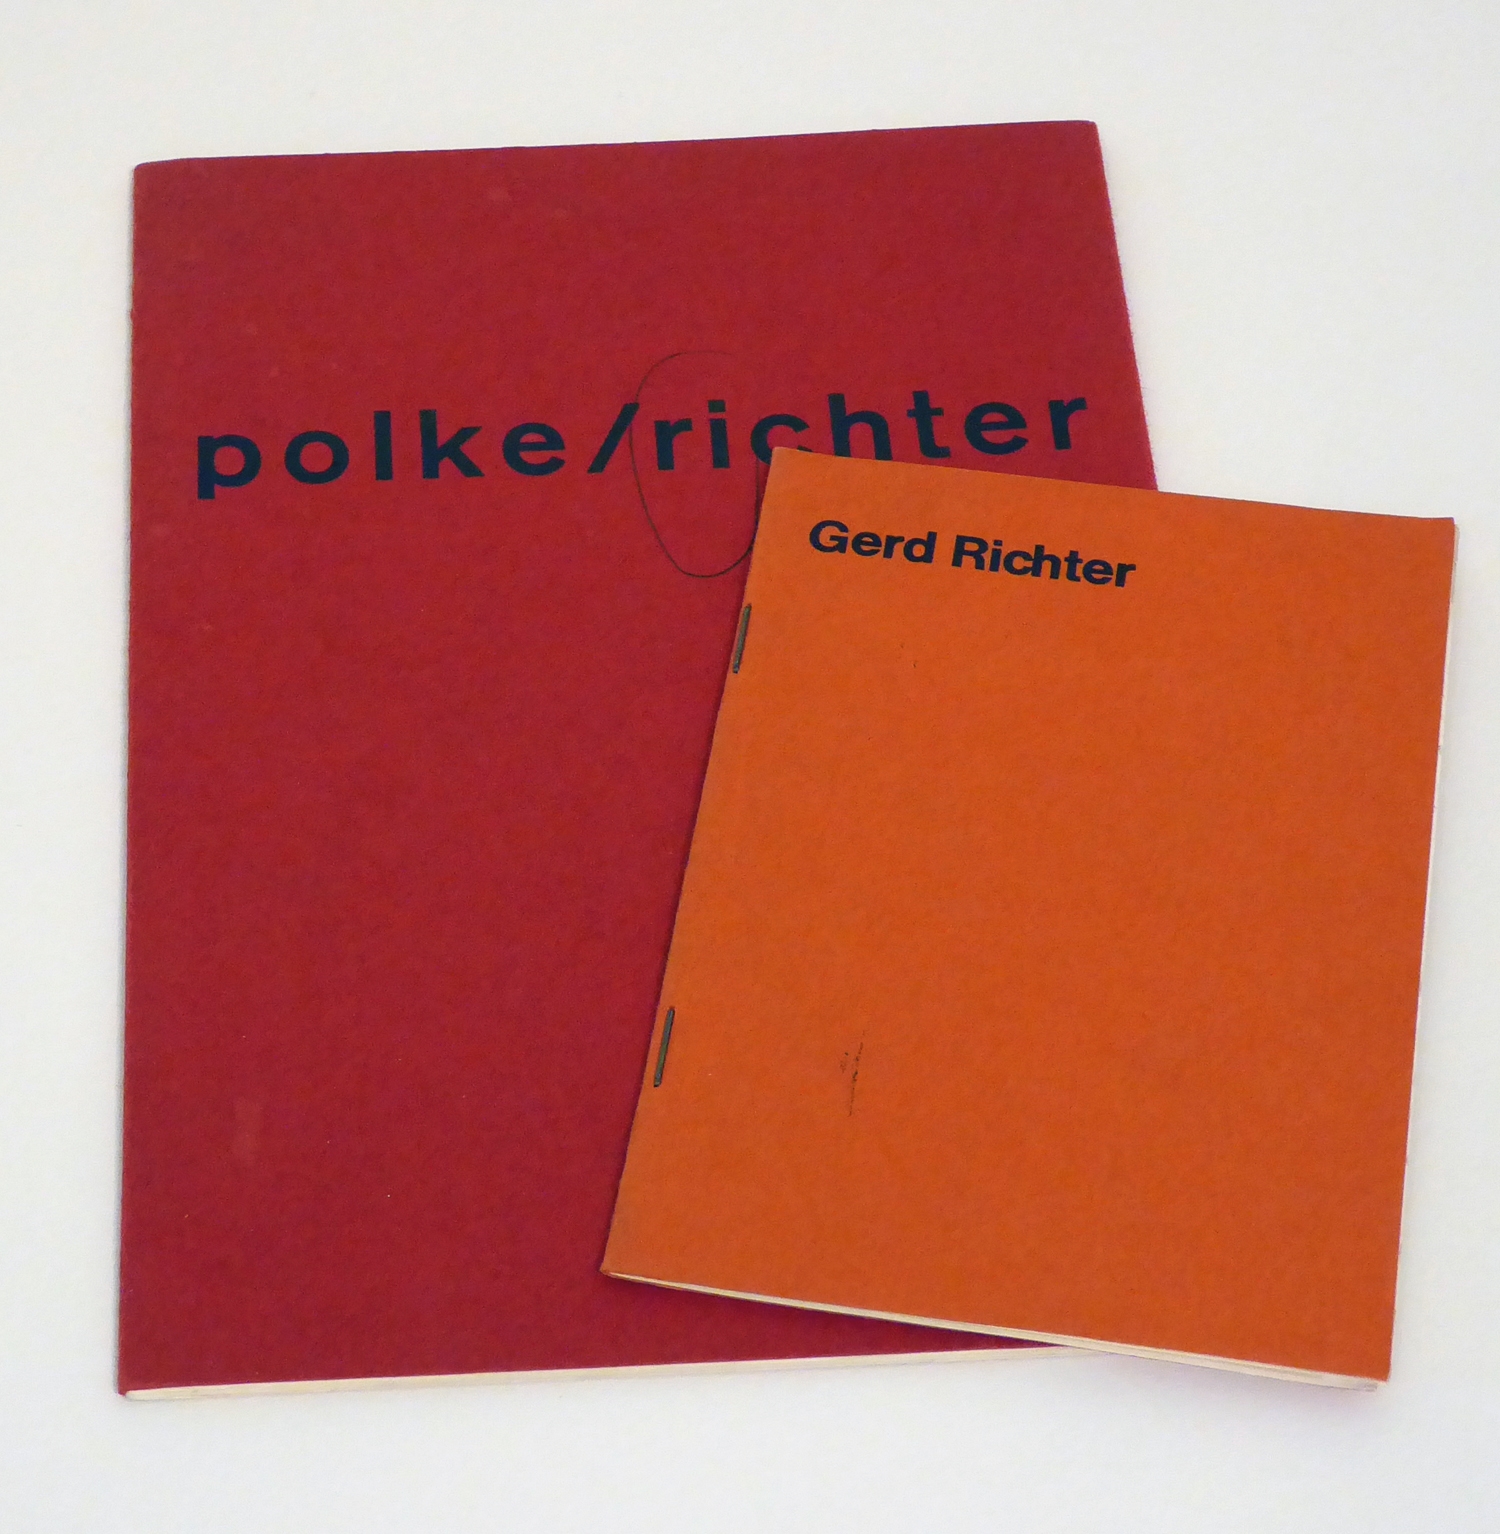 polke/richter richter/polke by Gerhard Richter, 1966